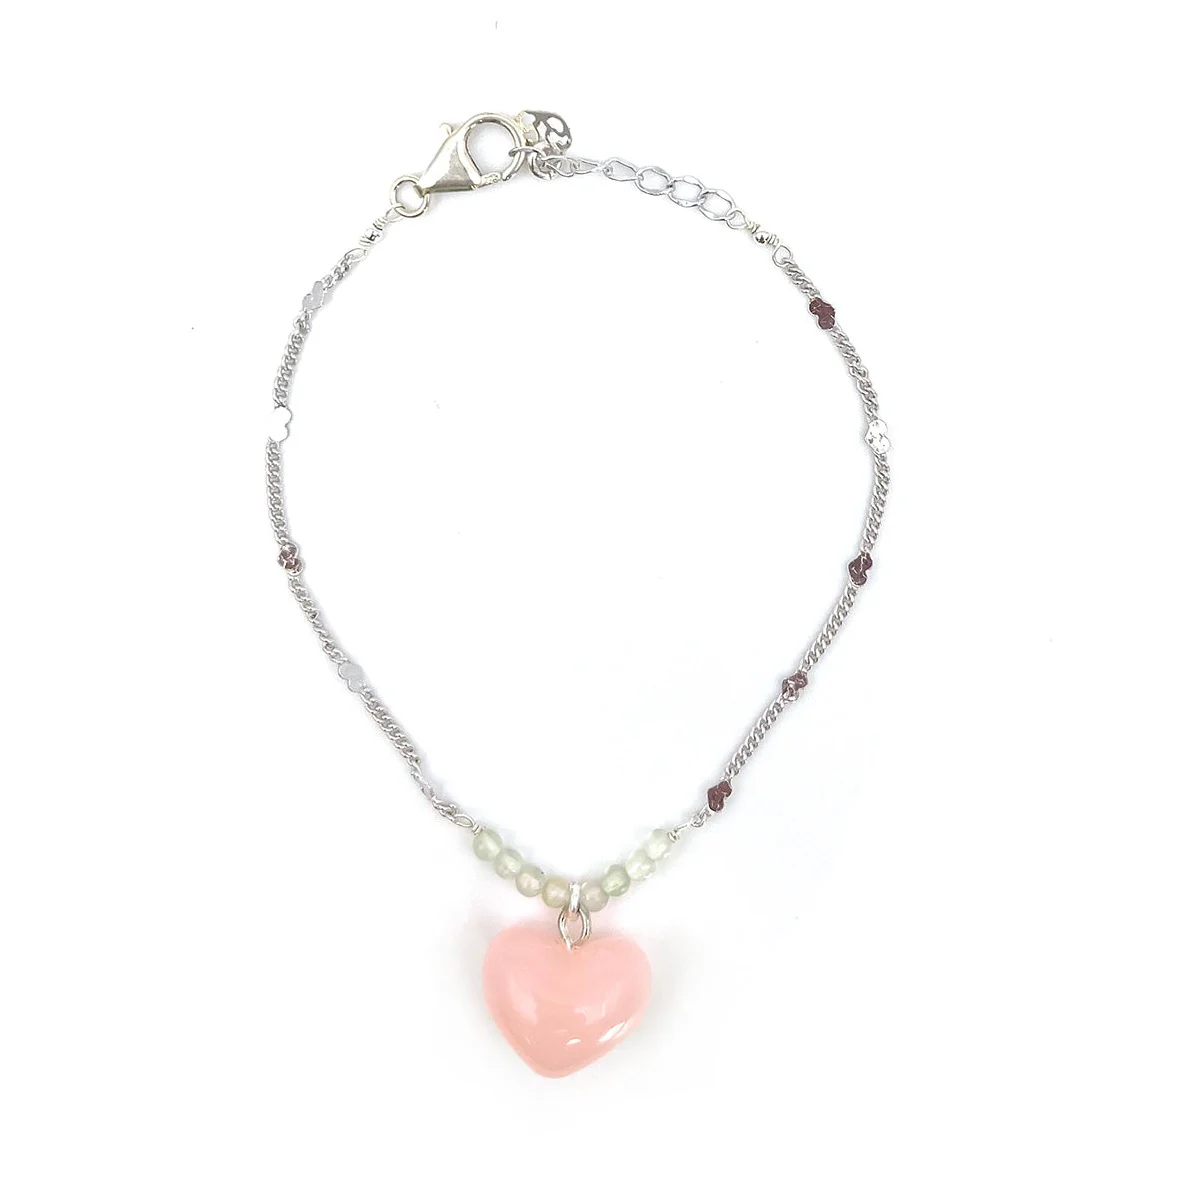 Heart Chain Bracelet - Sterling Silver